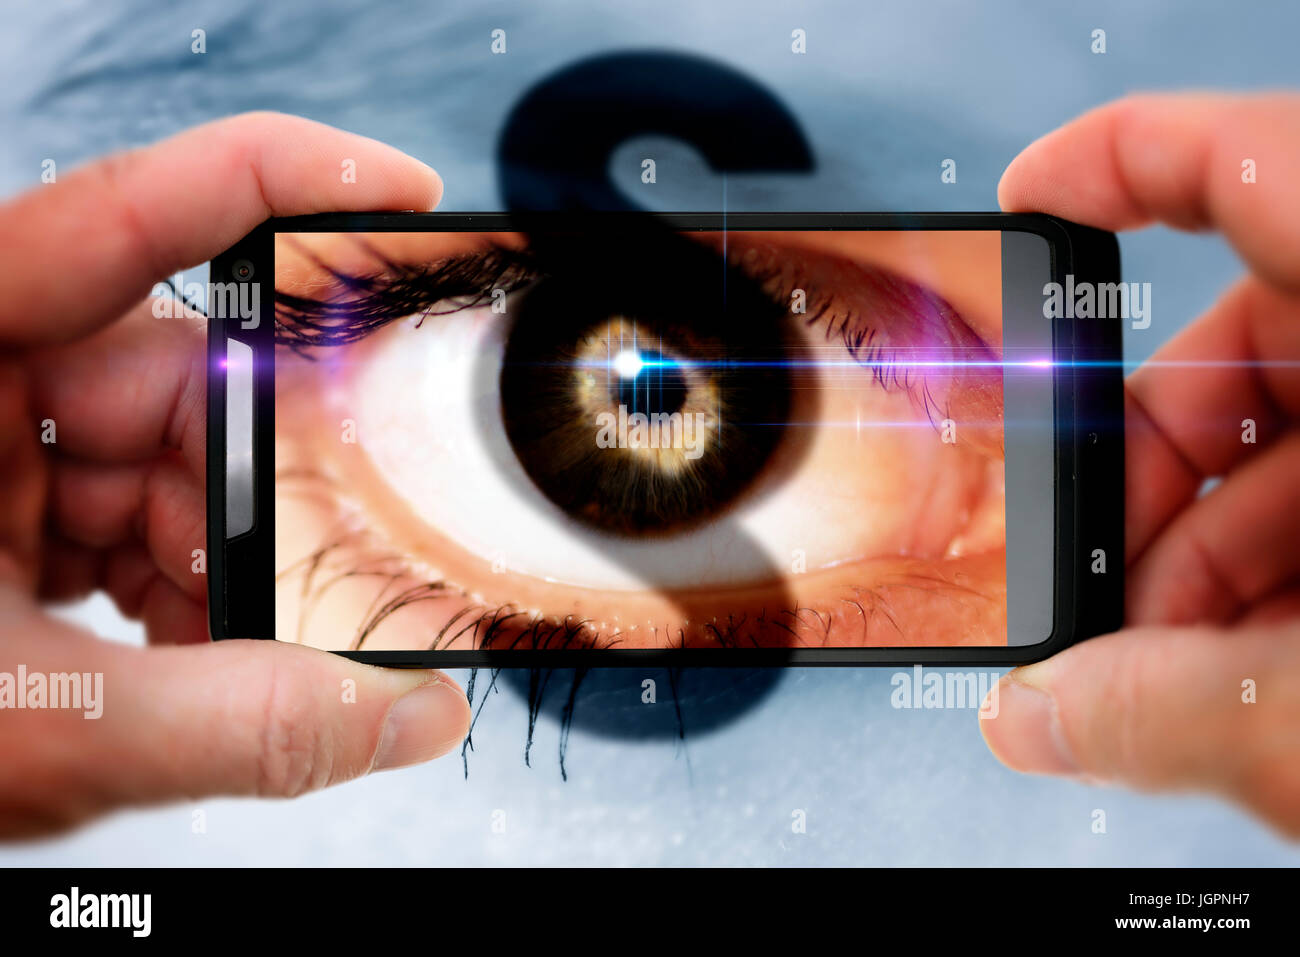 A woman's eye dans un téléphone mobile avec appareil photo paragraph sign, gawker Banque D'Images